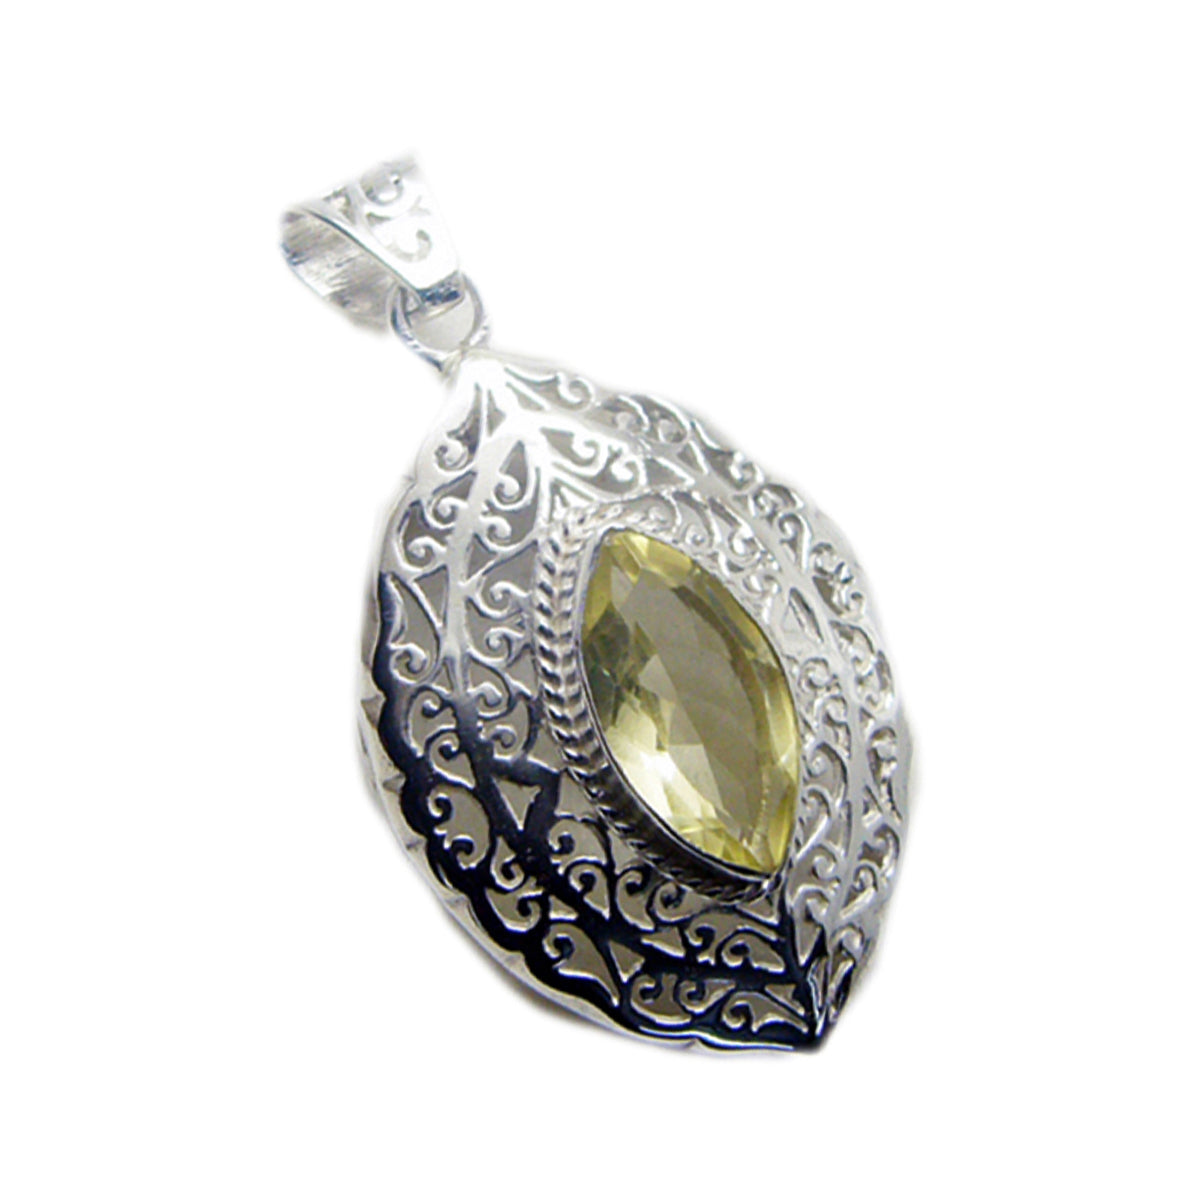 Riyo charmantes pierres précieuses marquise à facettes jaune citron quartz pendentif en argent cadeau pour femme